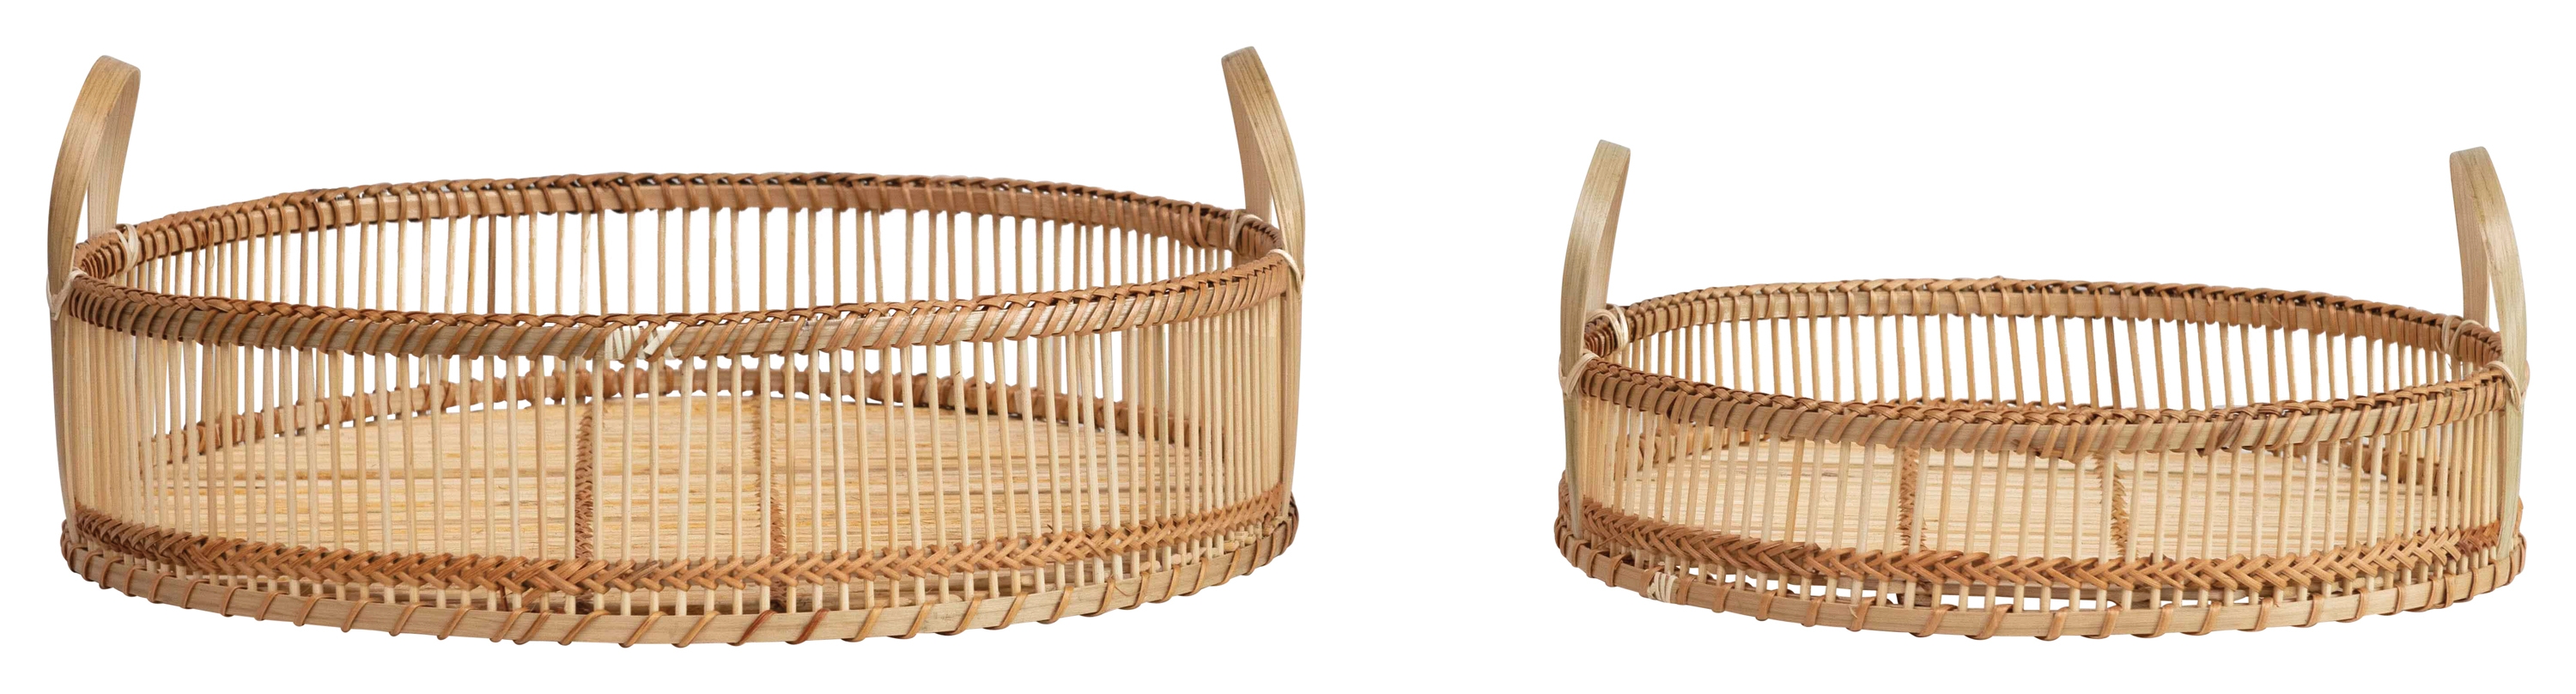 Decorative Round Bamboo Trays, Set of 2 - Image 2